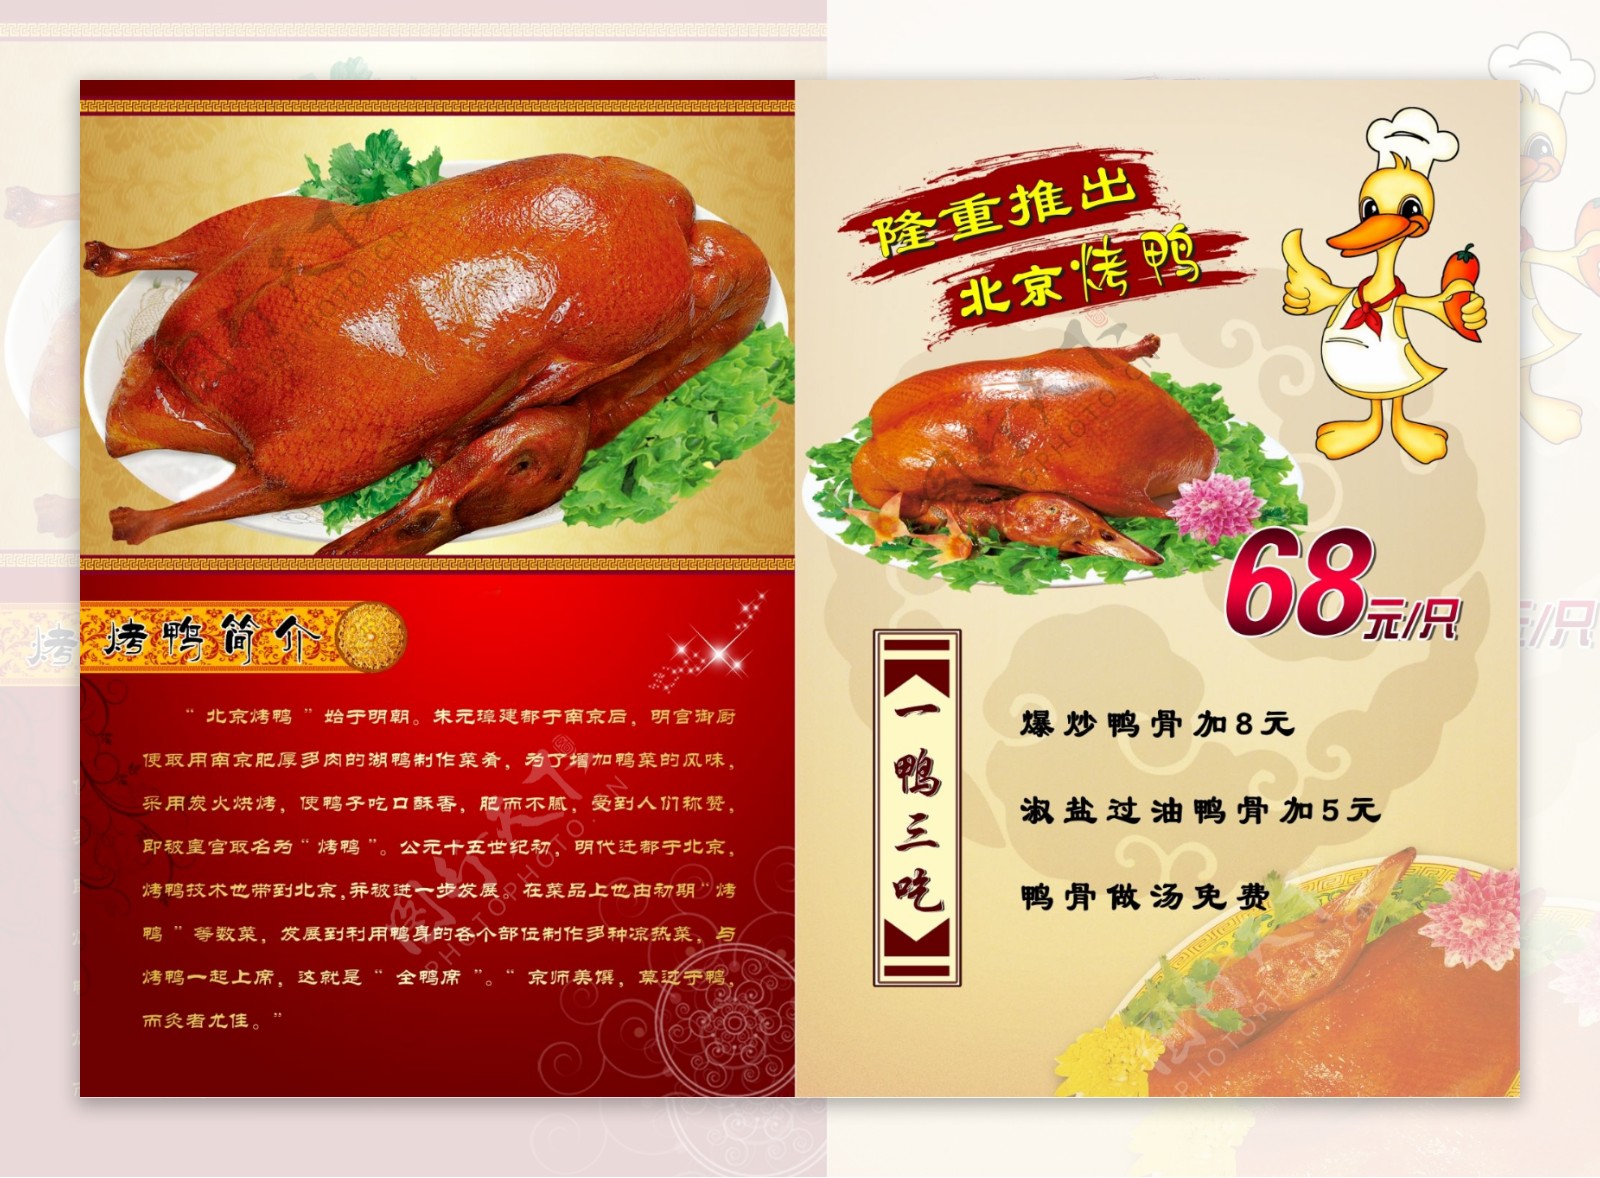 北京烤鸭菜谱图片